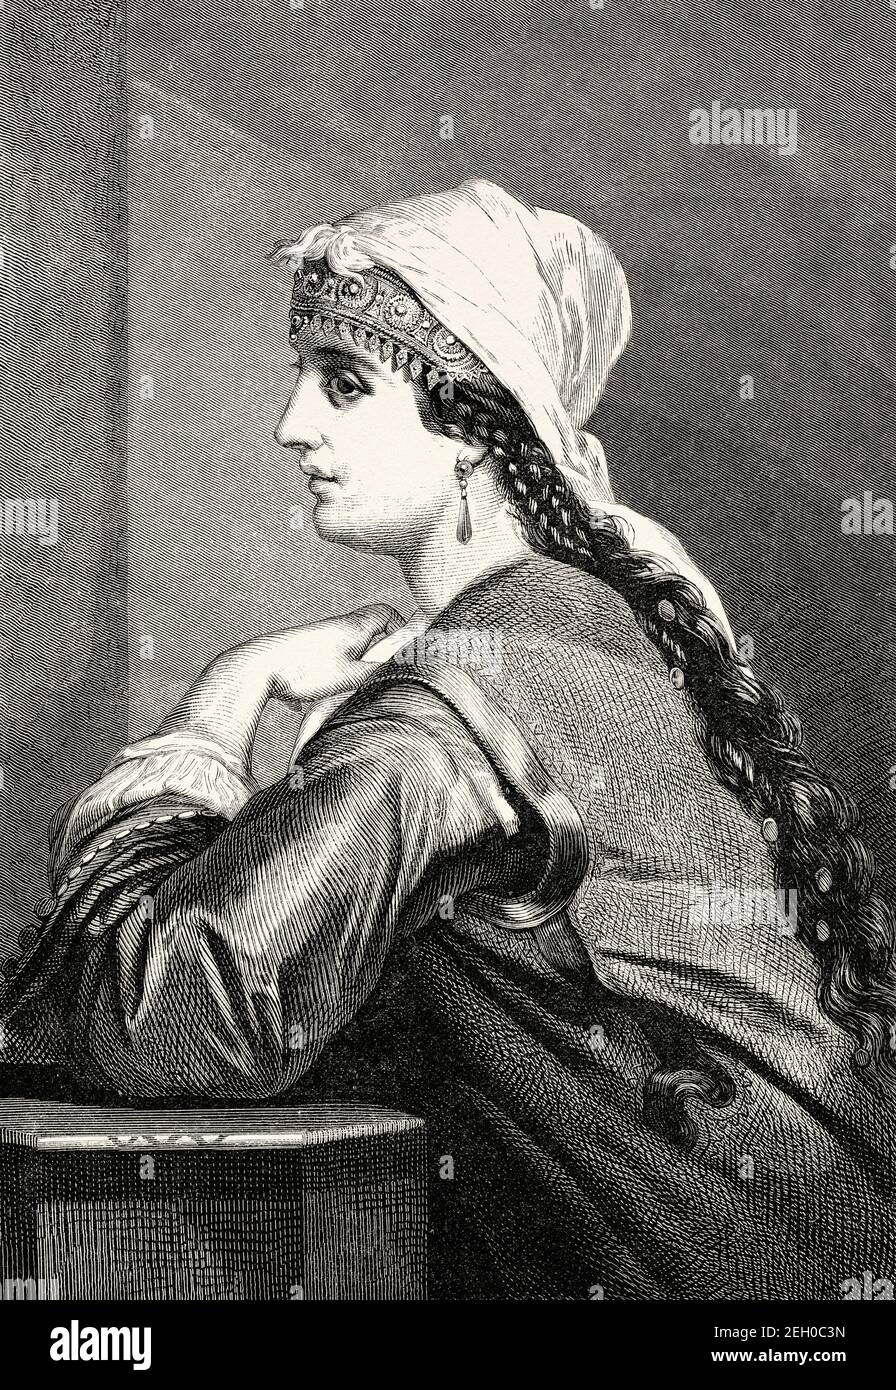 Mujer caucásica del siglo XIX vestida con traje tradicional, Rusia. Europa. Antiguo siglo 19 grabado ilustración de el Mundo ilustrado 1879 Foto de stock